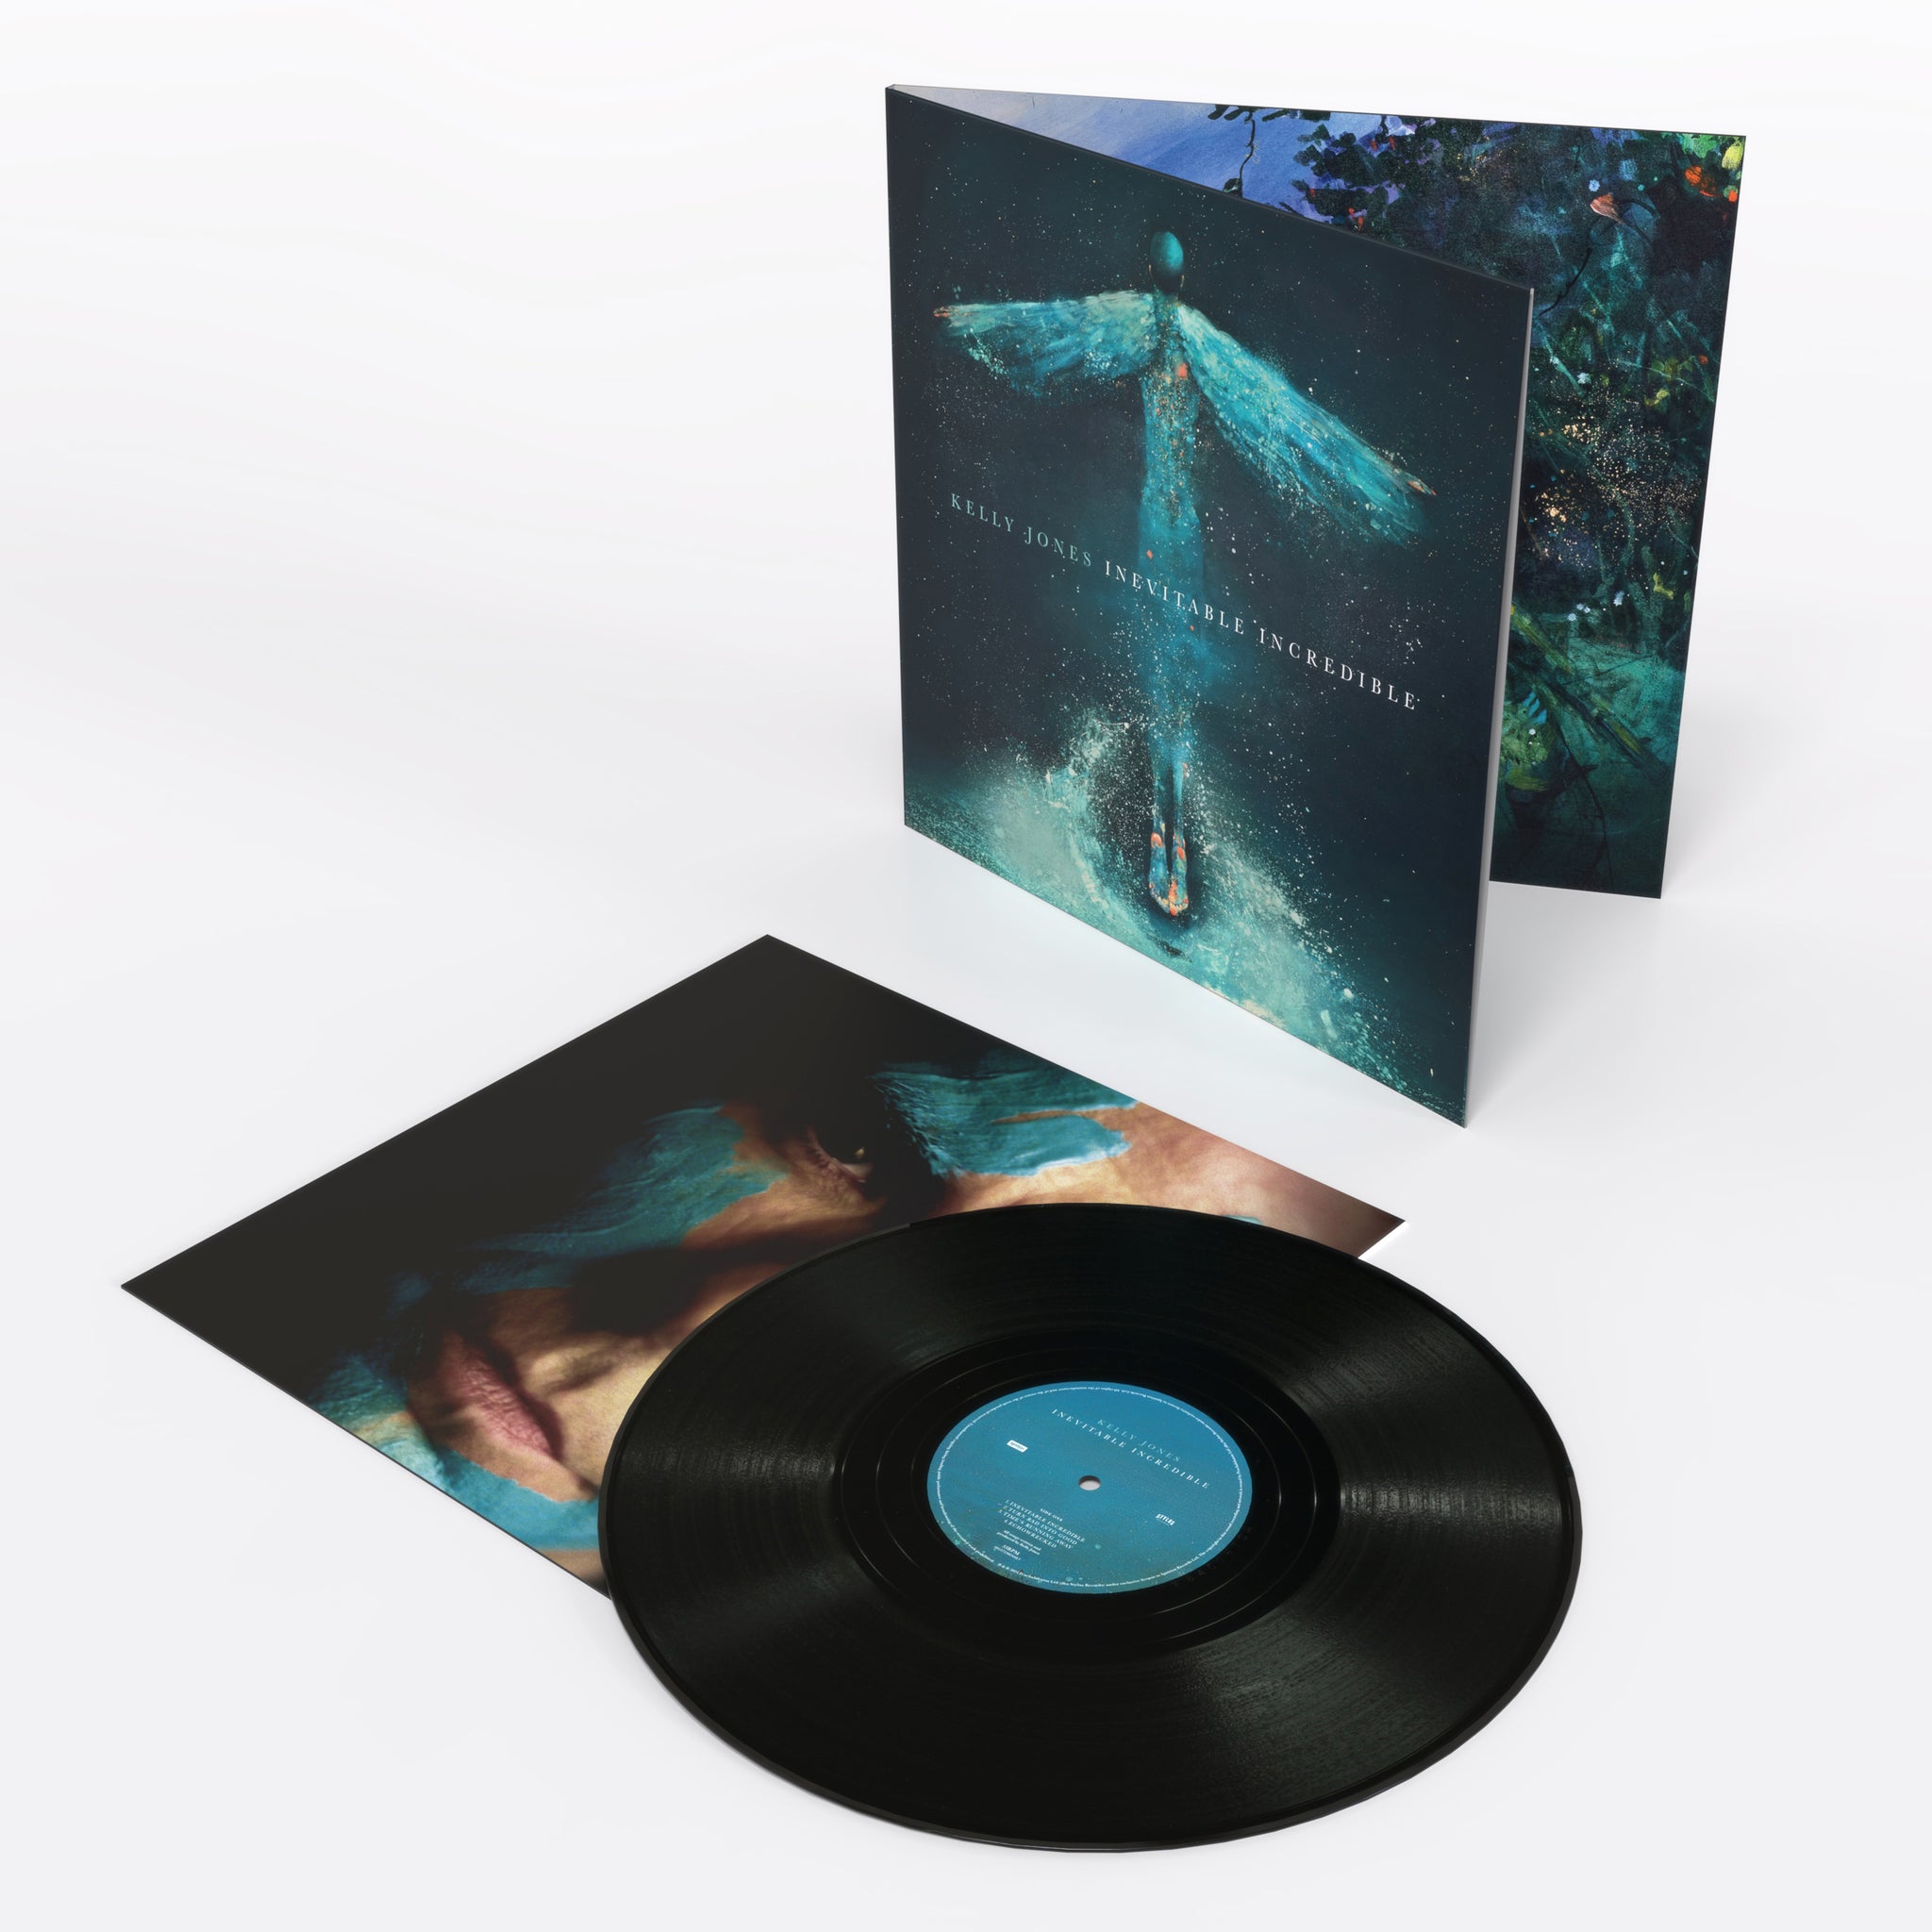 KELLY JONES - Inevitable Incredible - LP - Gatefold Vinyl [MAY 3]